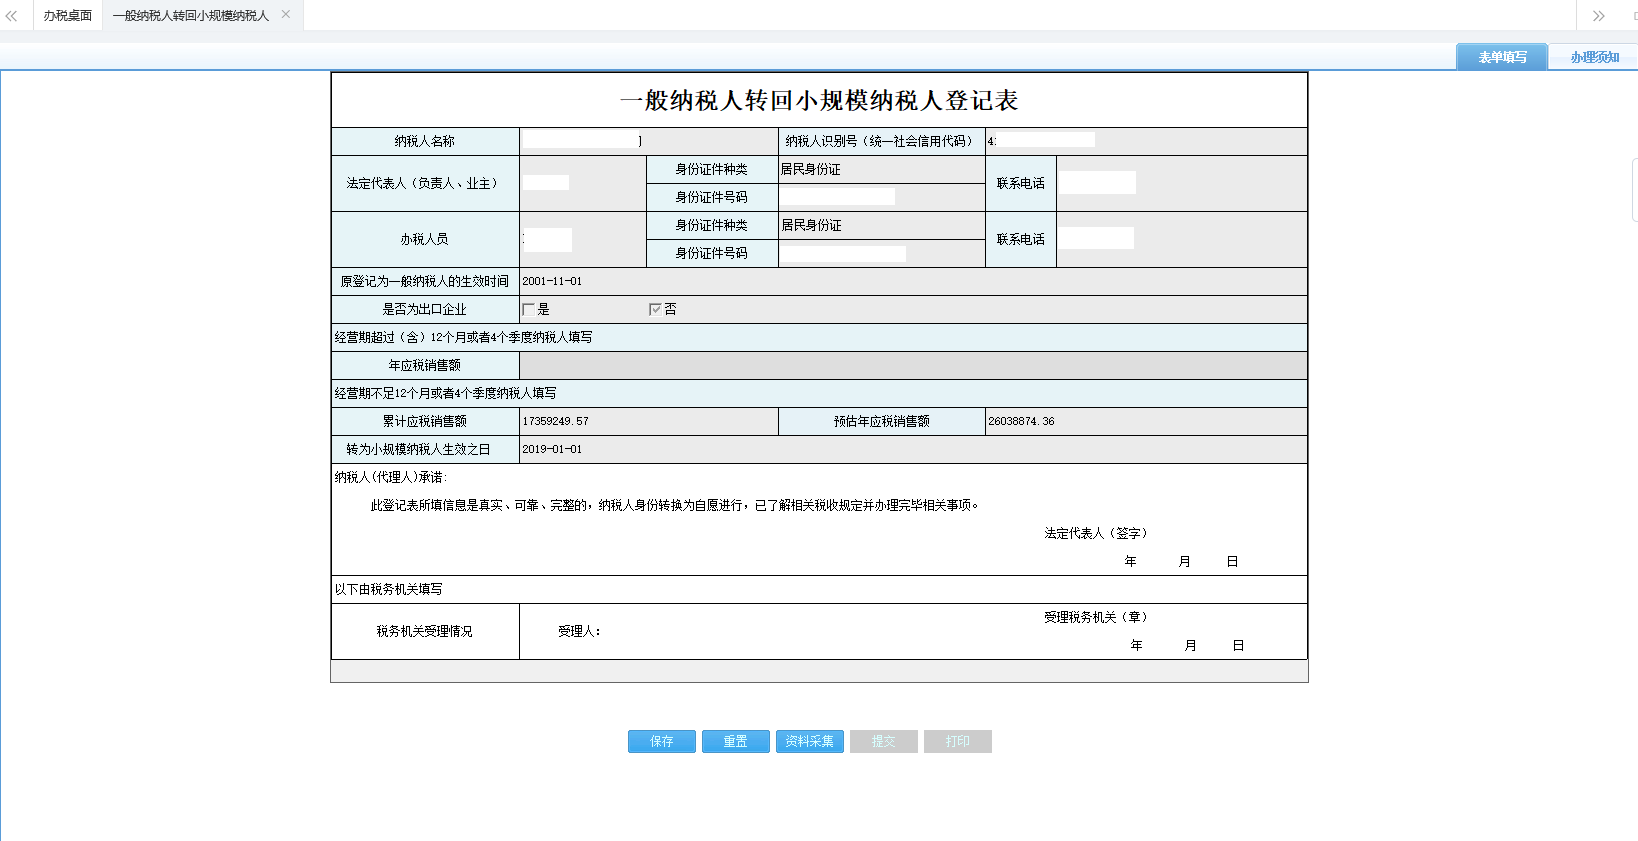 河南省电子税务局一般纳税人转回小规模纳税人登记表